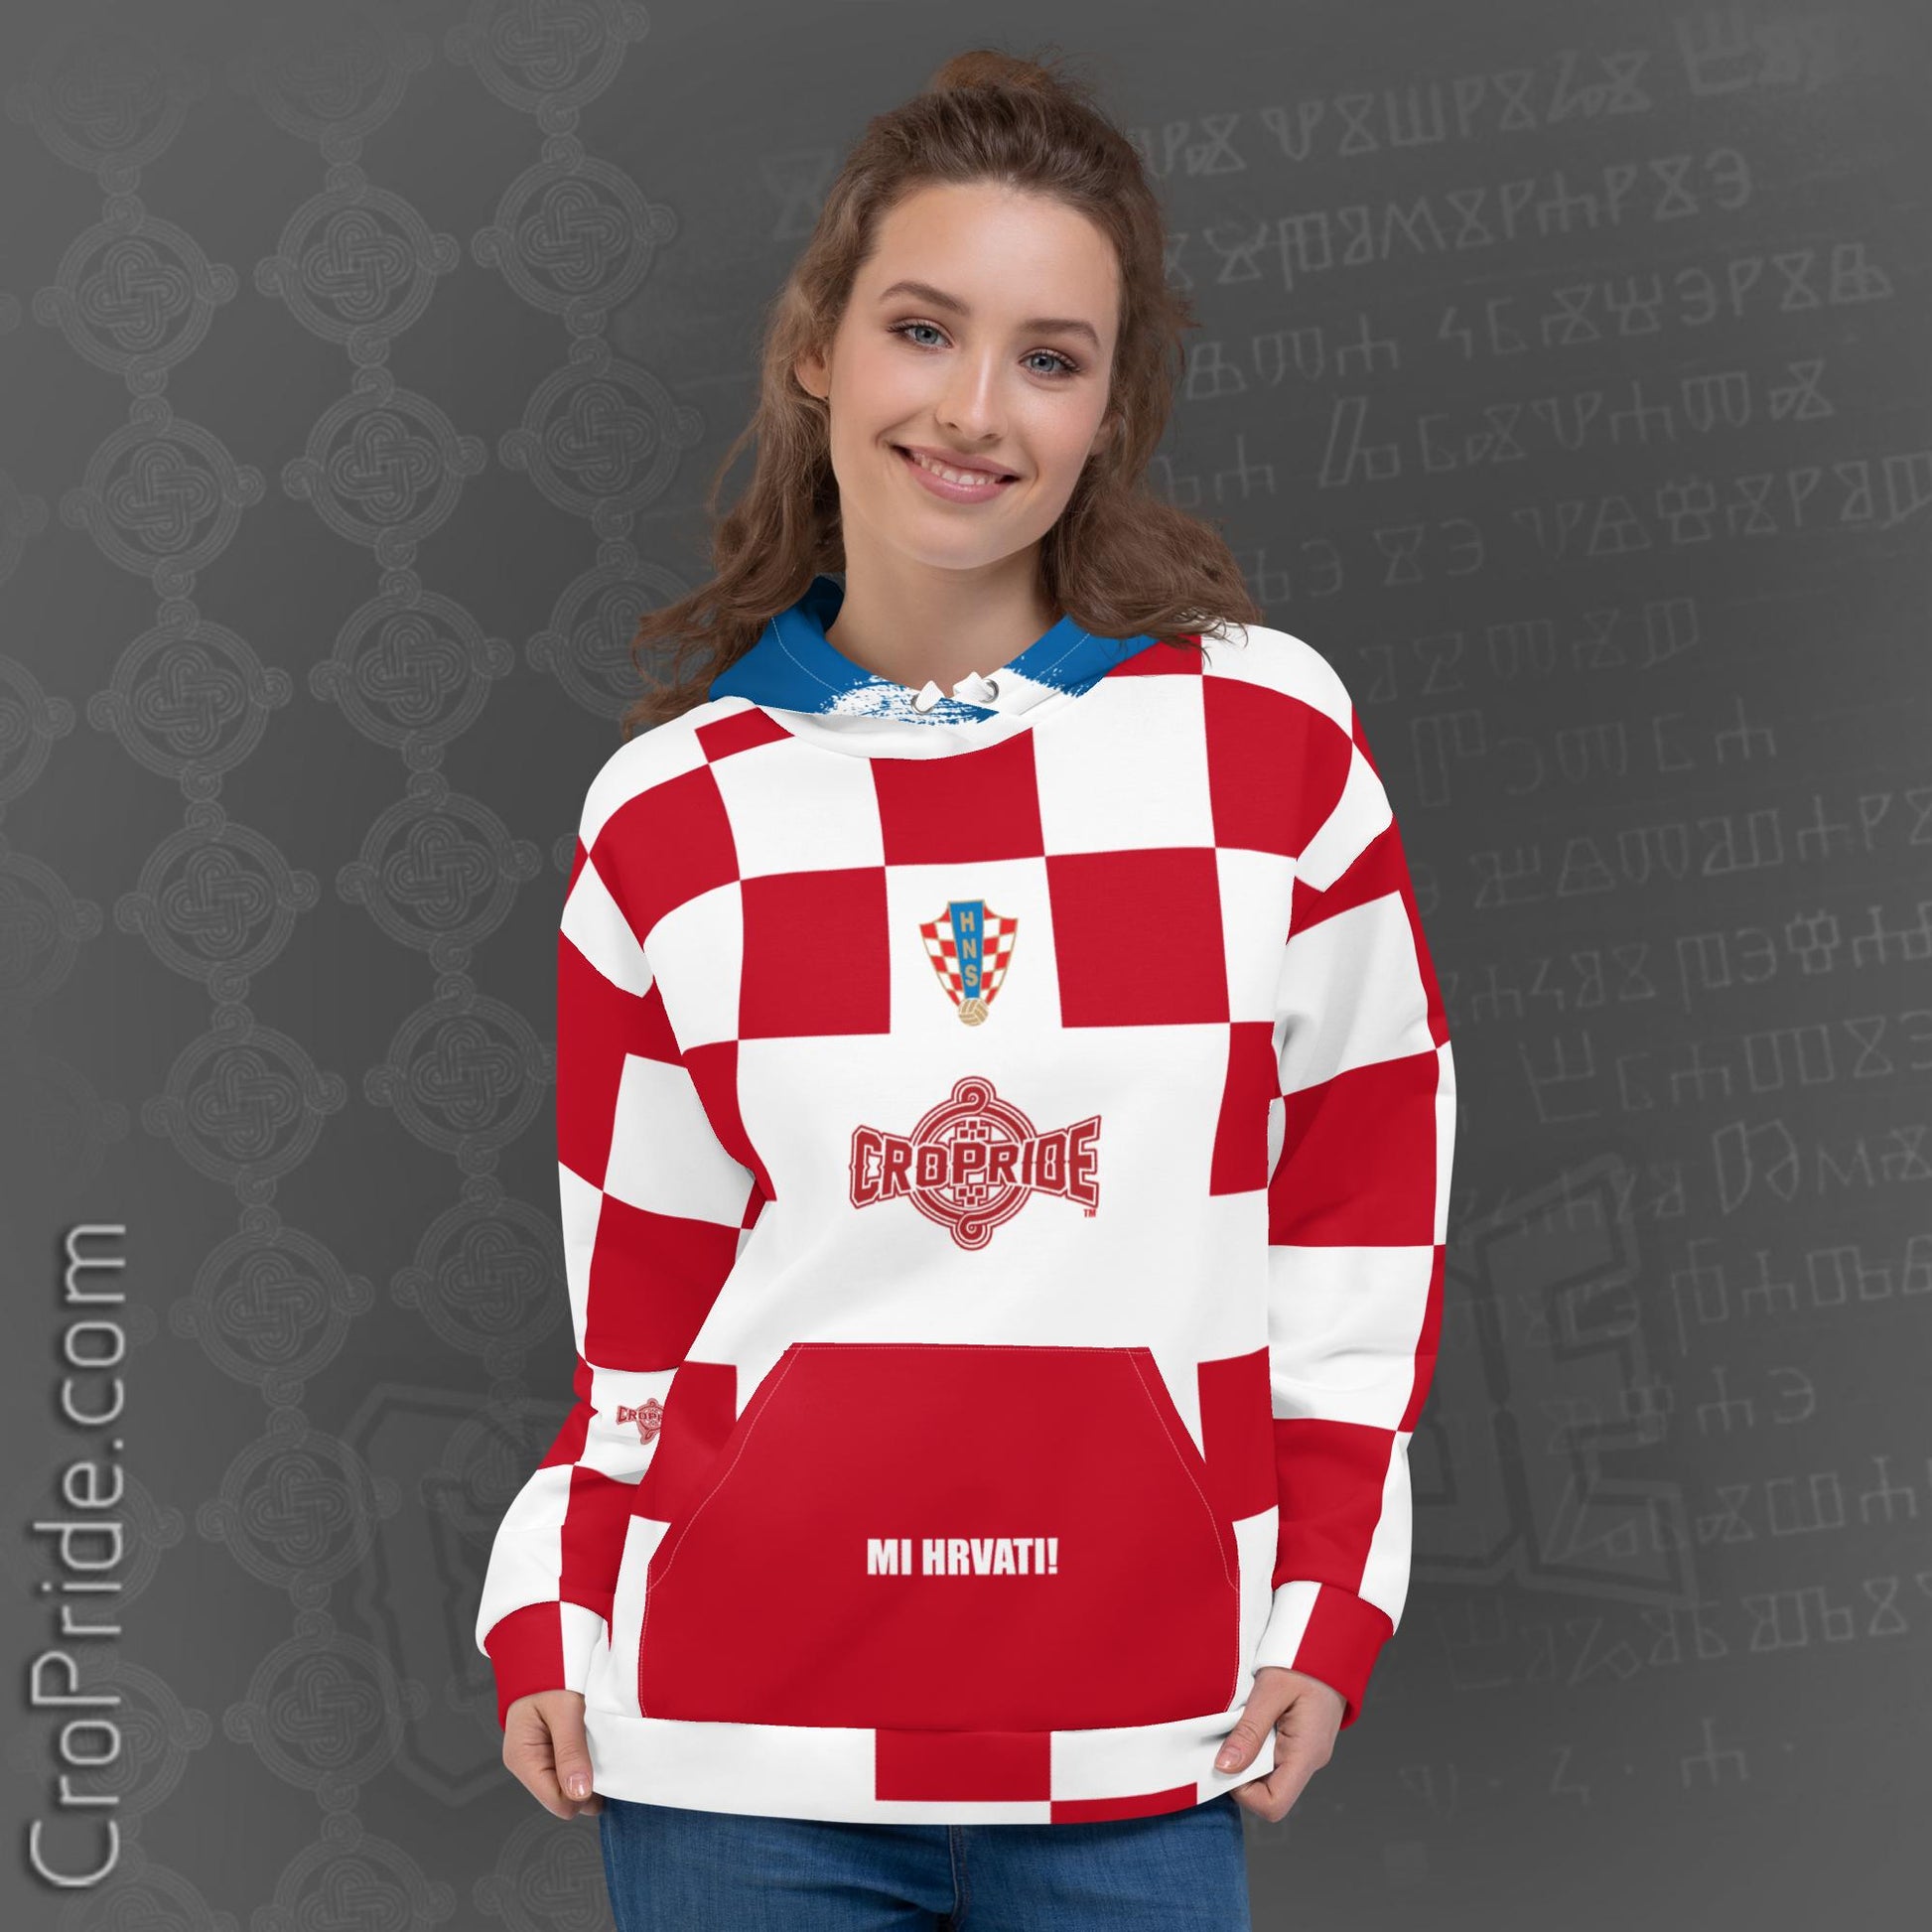 Croatian Hoodie: "Mi Hrvati" Unisex Hoodie with Distressed Flag